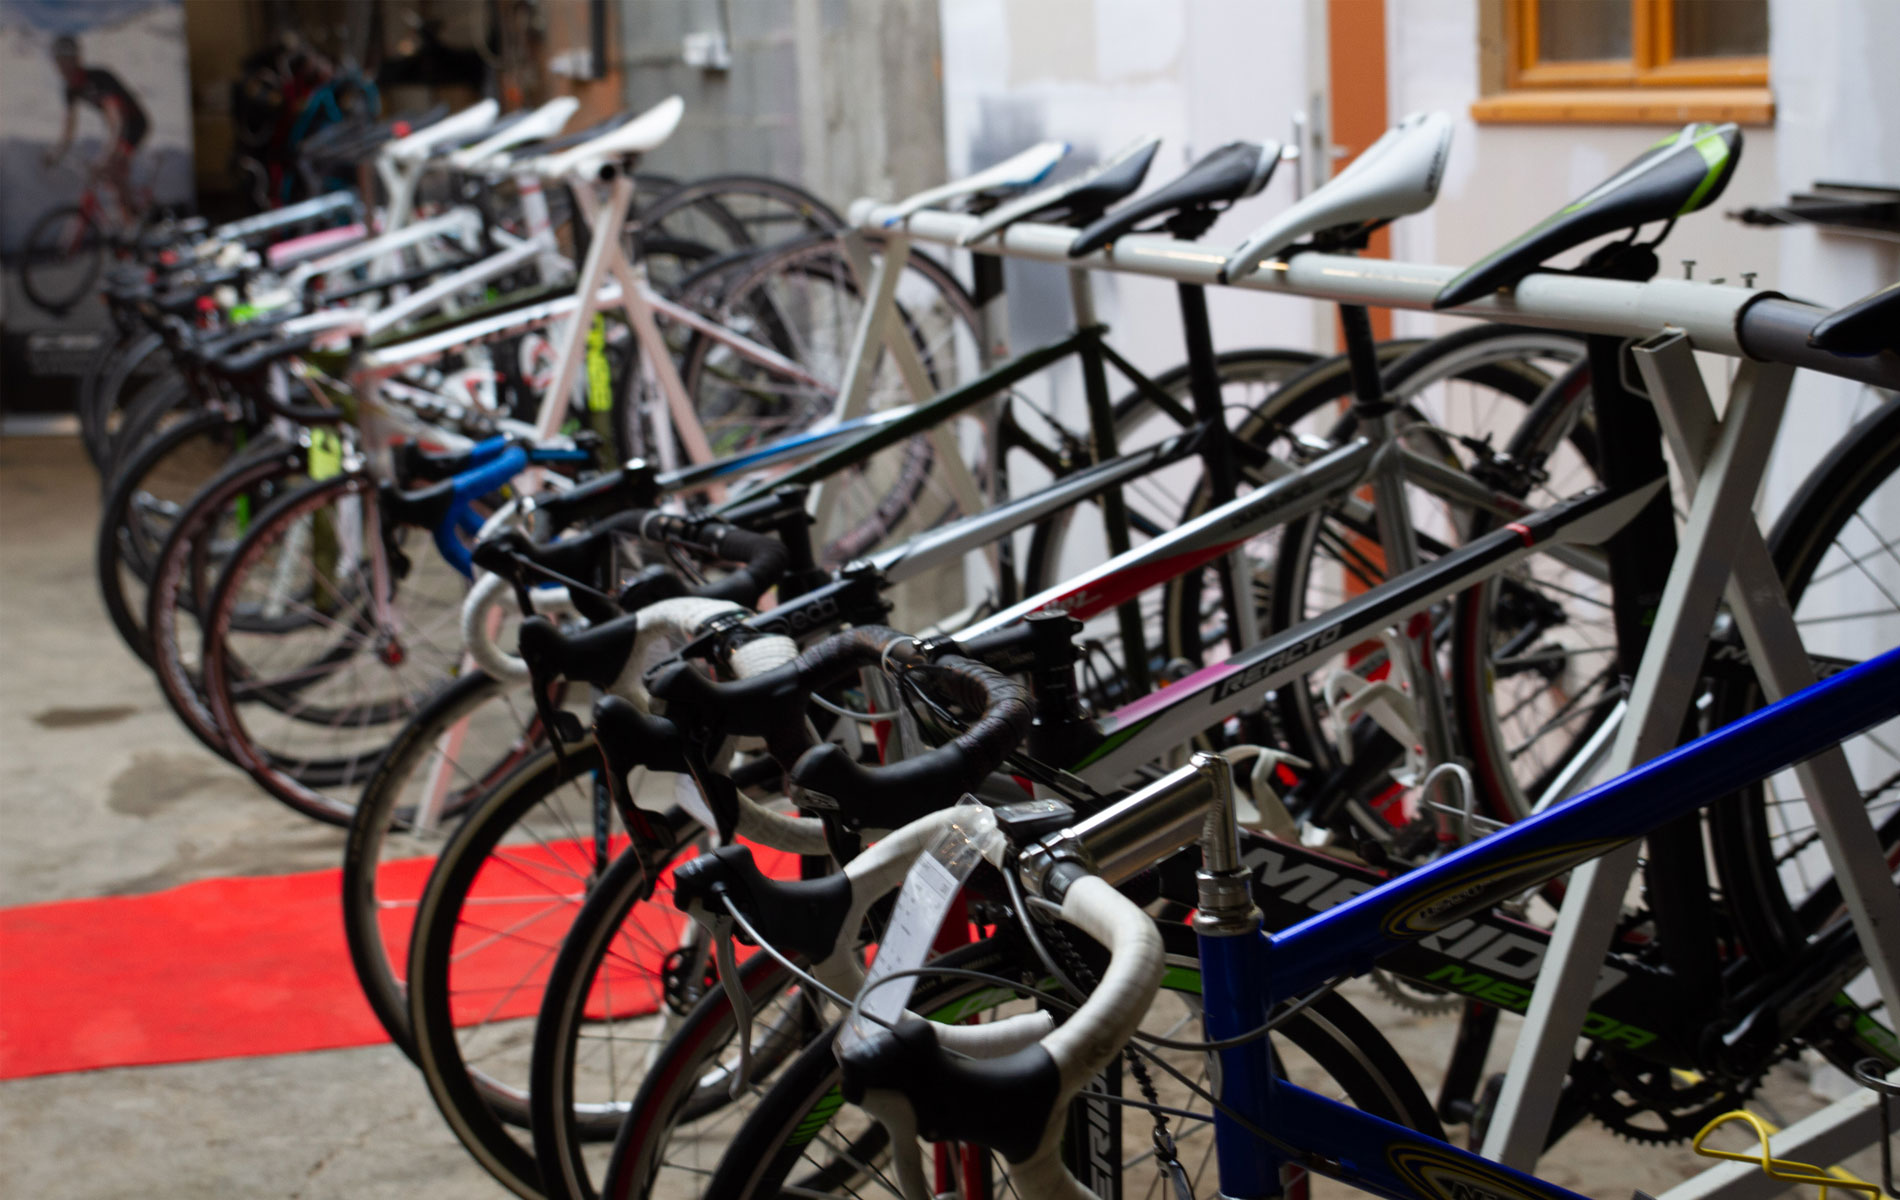 3ème marché de l'occasion - dépot - vente de vélos d'occasion -vélo de route - vtt - vélo électrique - vélo de ville à Lourdes dans les Hautes-Pyrénées